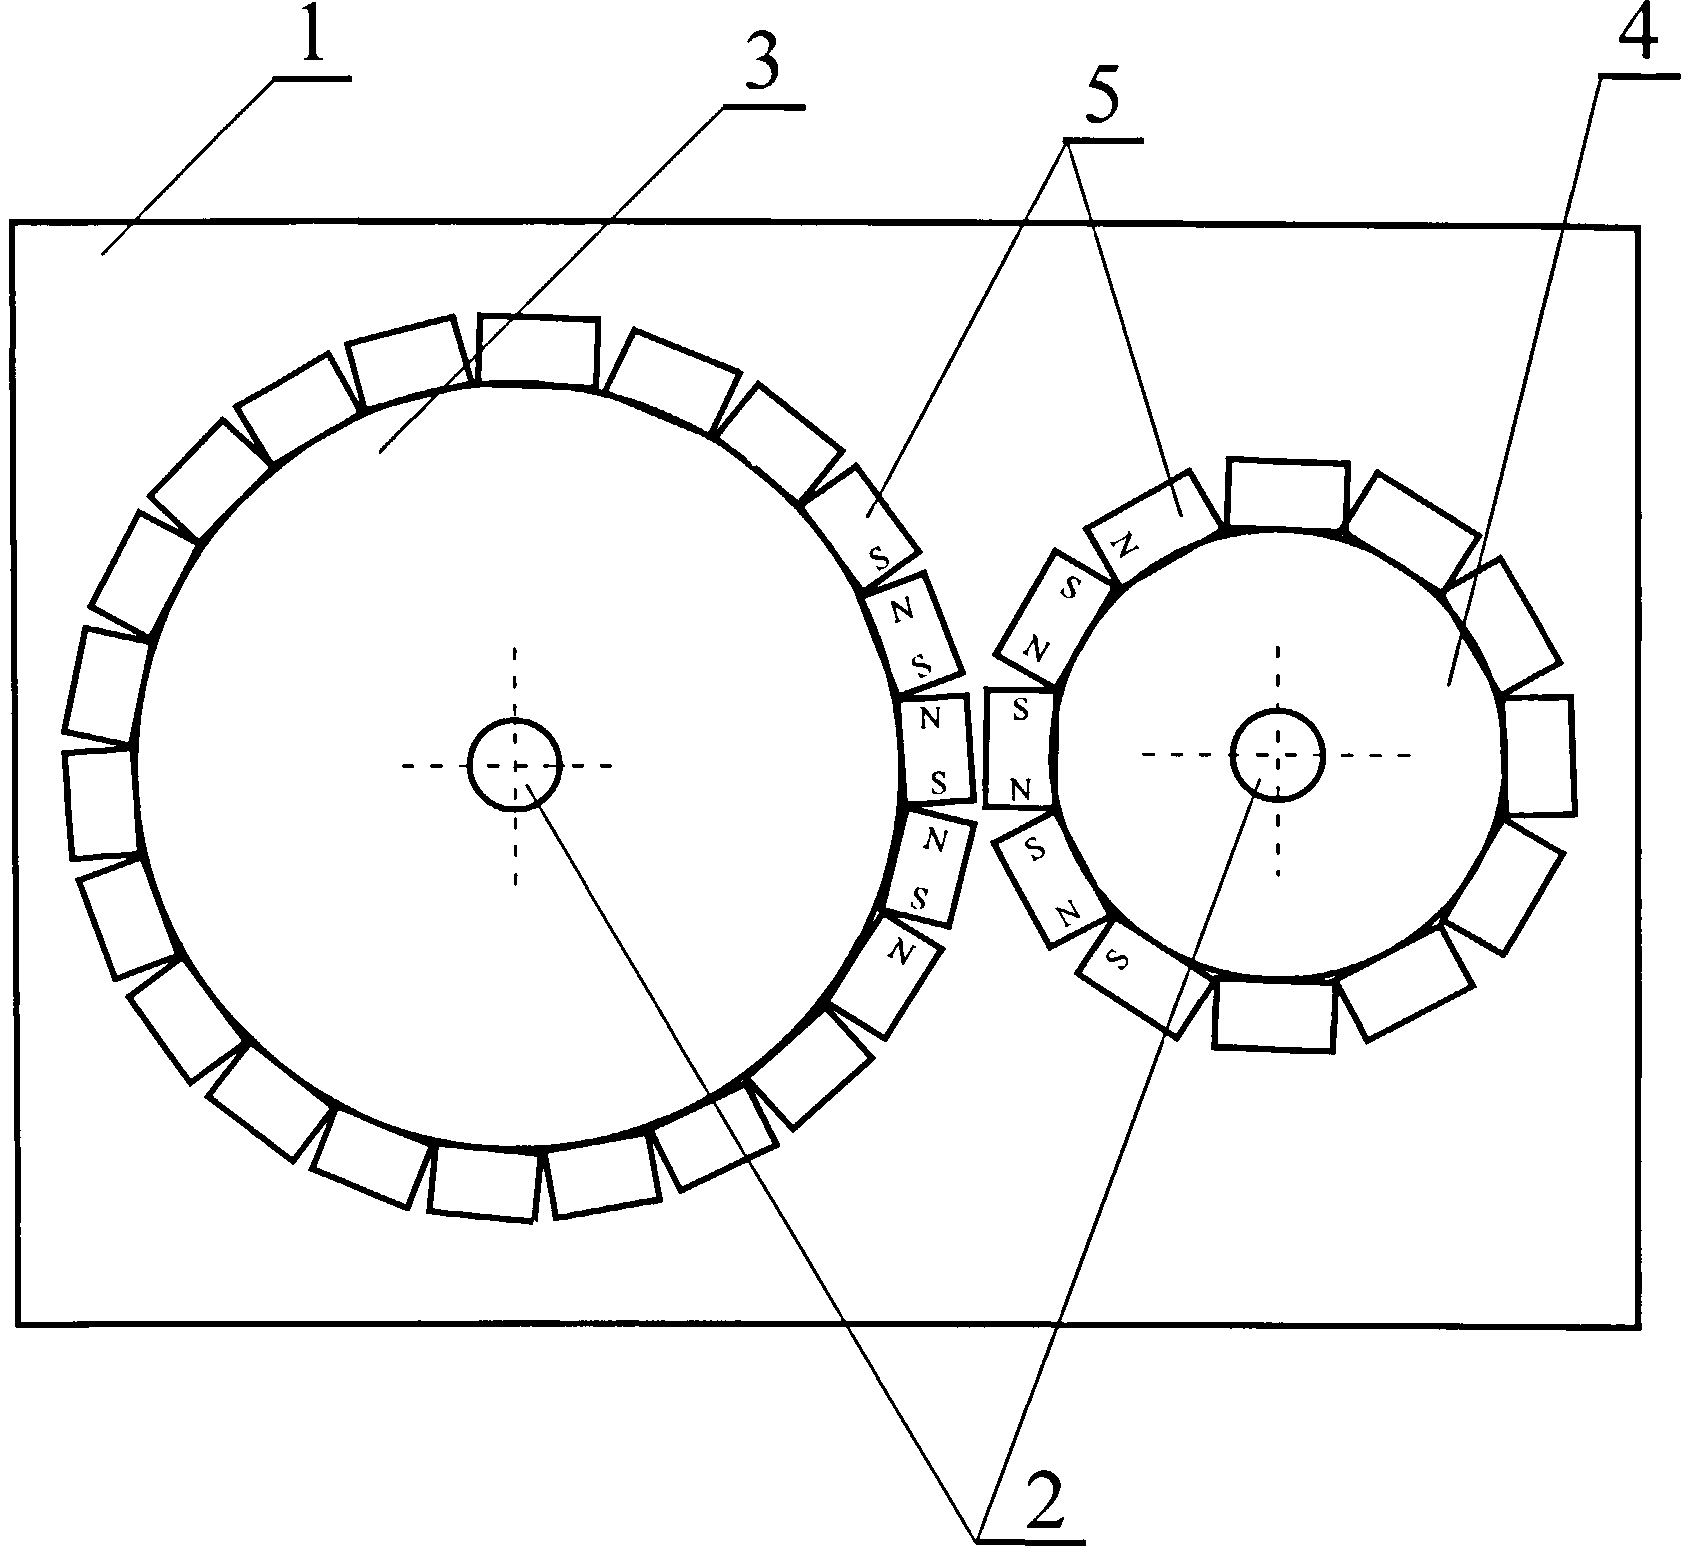 Инструкция по изготовлению аксиального генератора на неодимовых магнитах